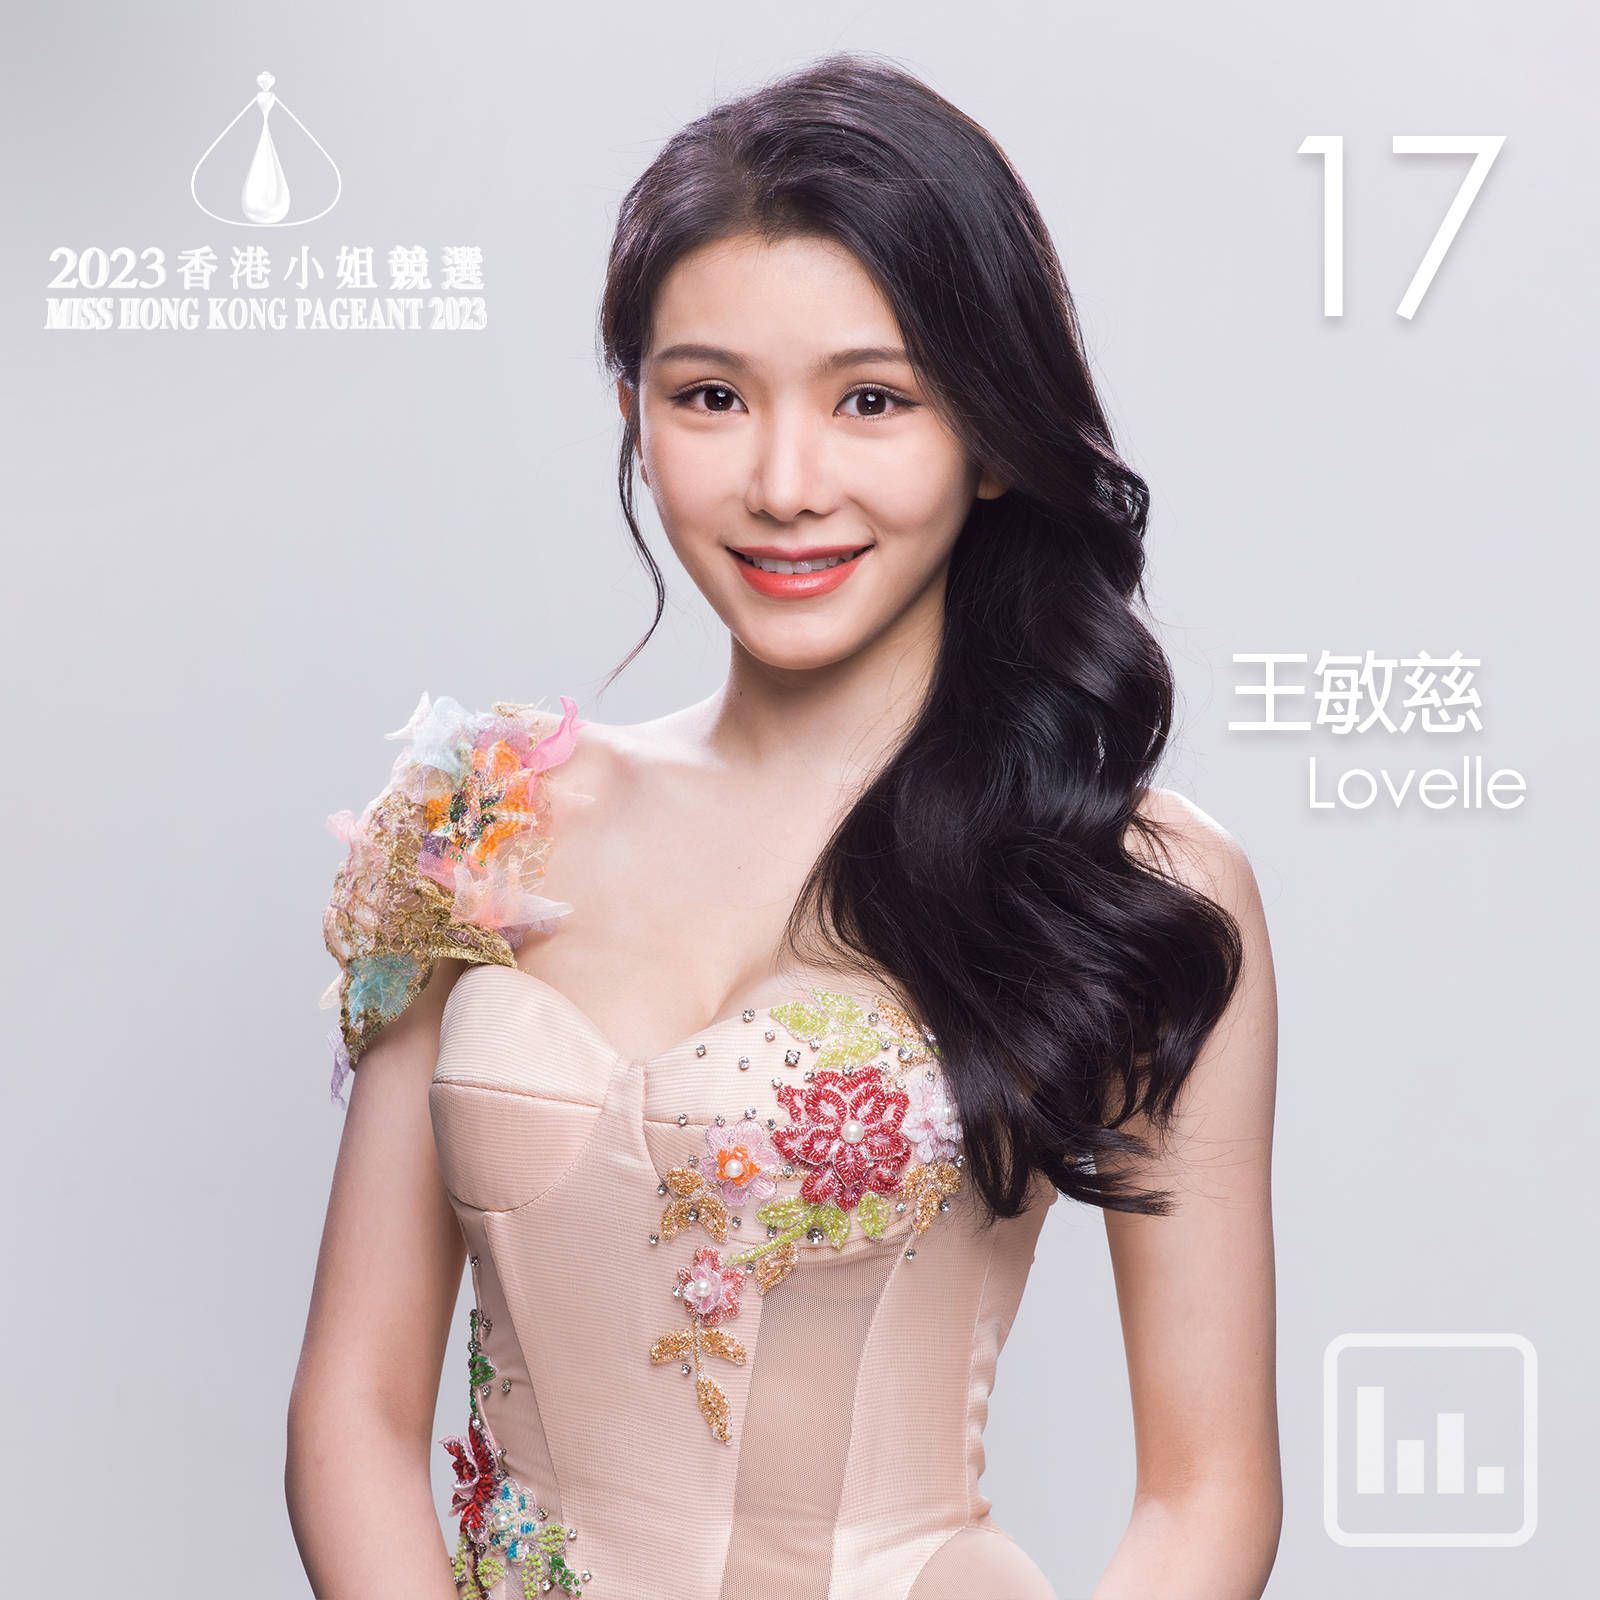 江苏女生获2023香港小姐亚军 颜值人气均力压冠军